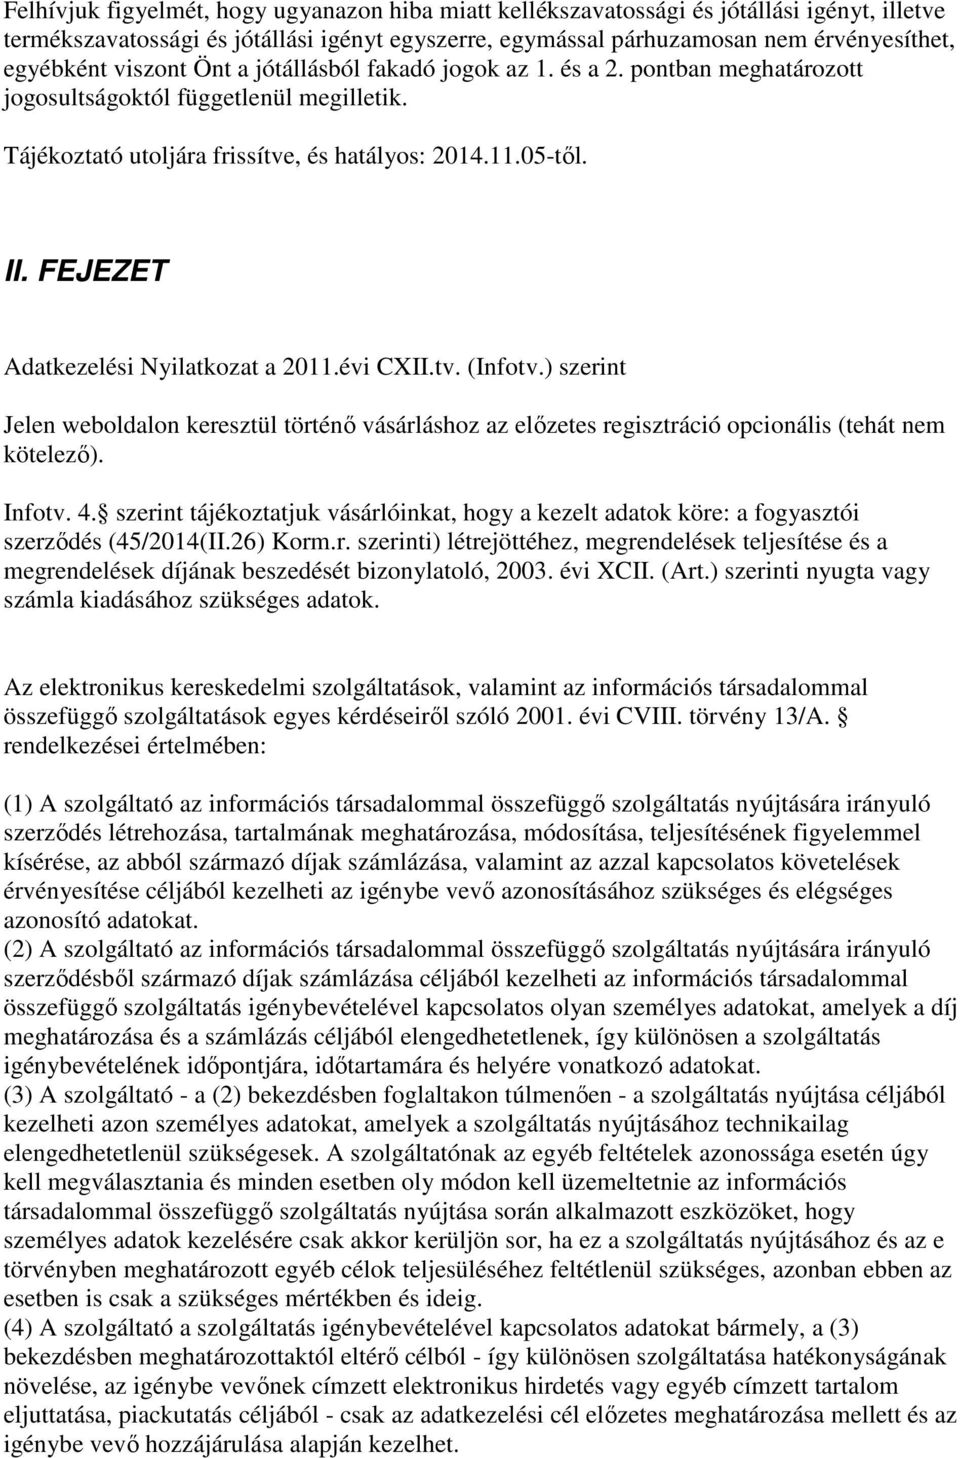 FEJEZET Adatkezelési Nyilatkozat a 2011.évi CXII.tv. (Infotv.) szerint Jelen weboldalon keresztül történő vásárláshoz az előzetes regisztráció opcionális (tehát nem kötelező). Infotv. 4.